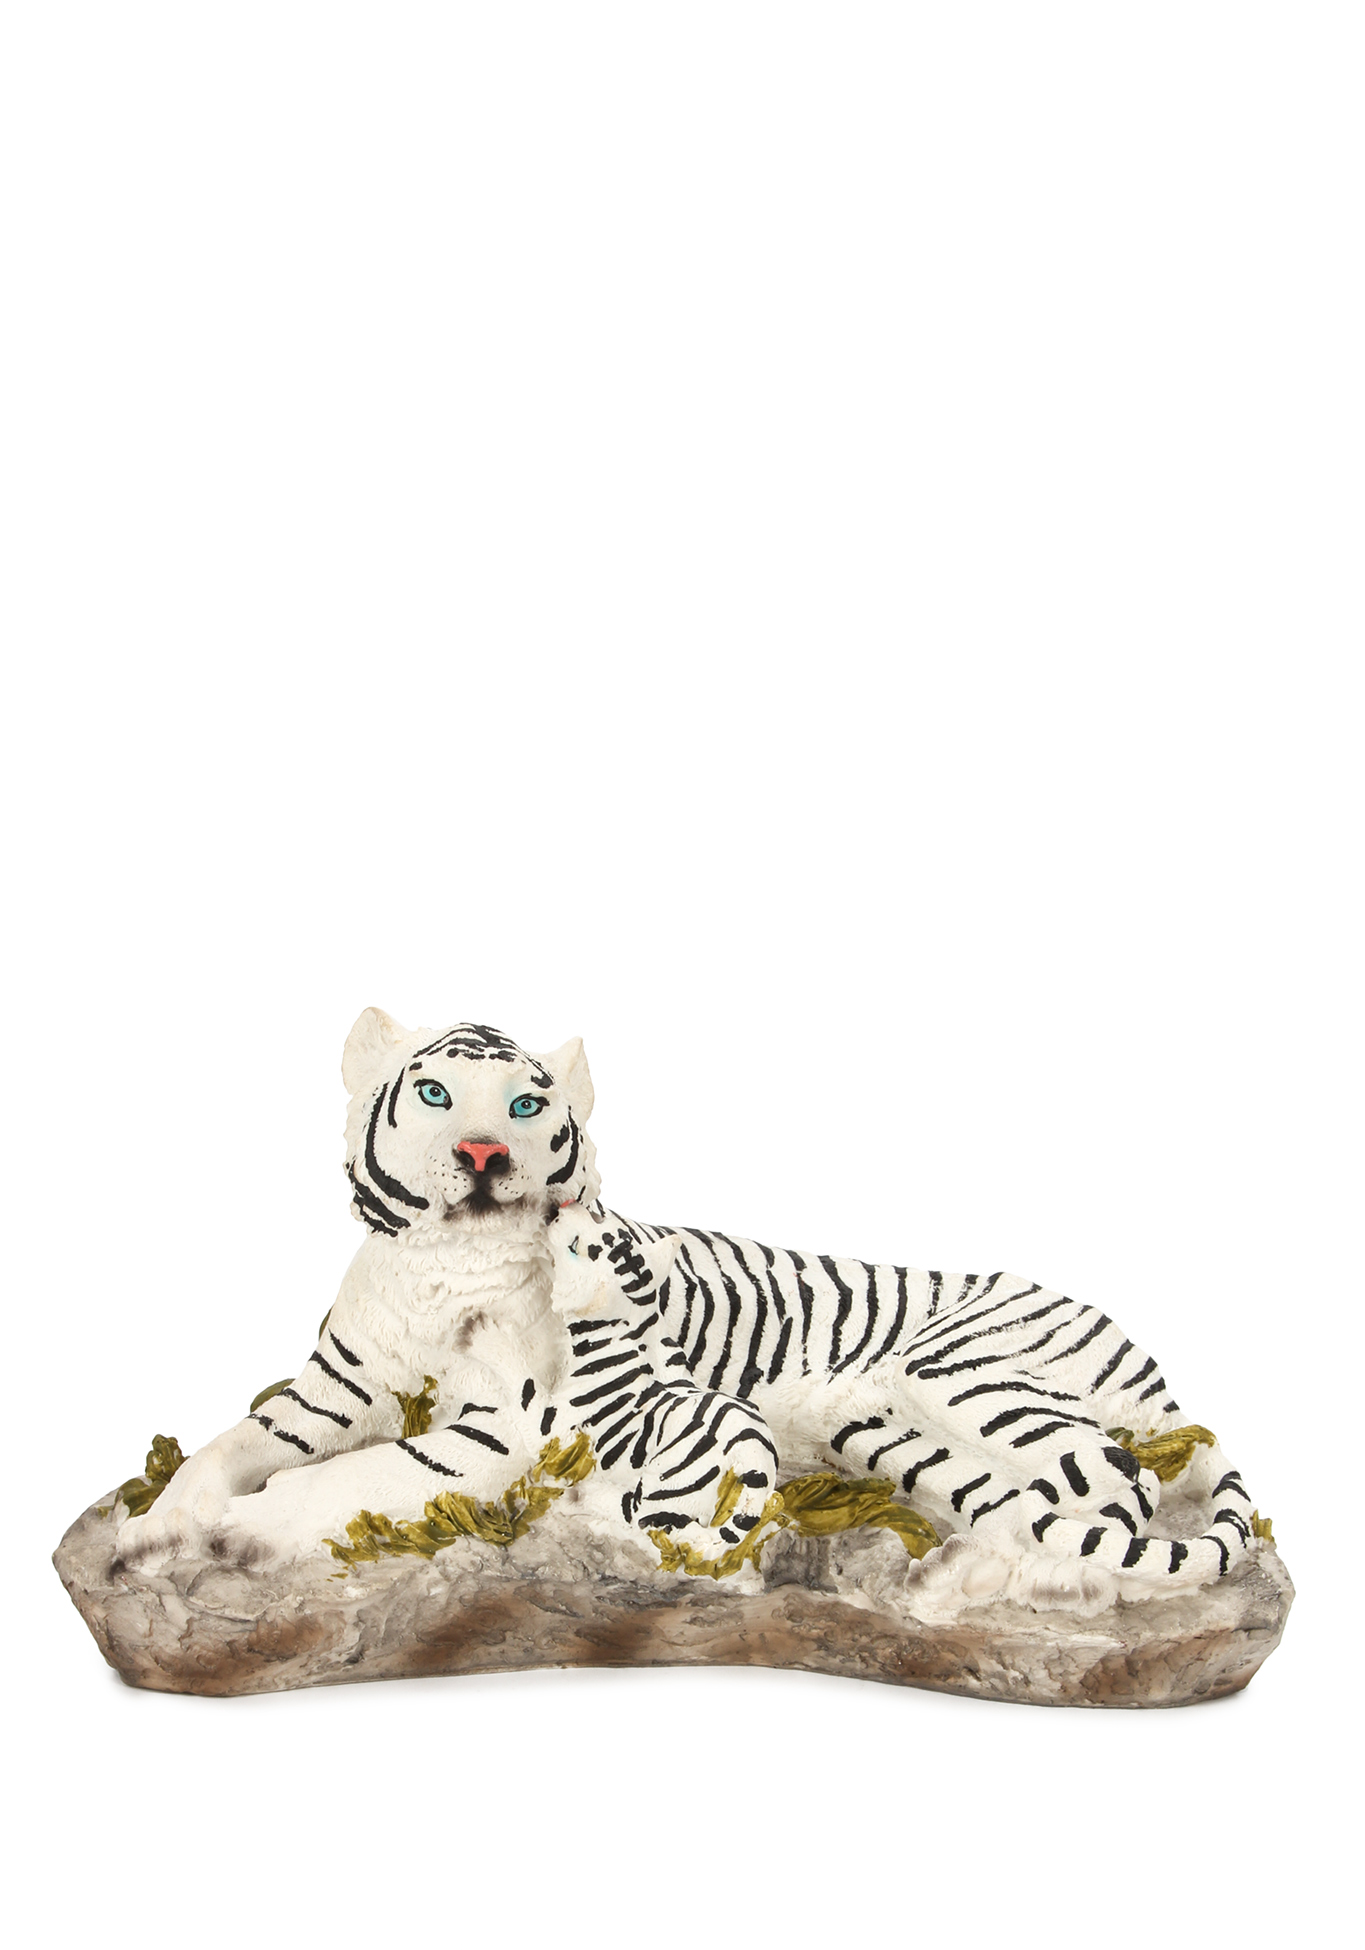 Оберег интерьерный "Тигр" Lefard, цвет стойка бенгальского тигра, размер 20,5*7*15 см - фото 7